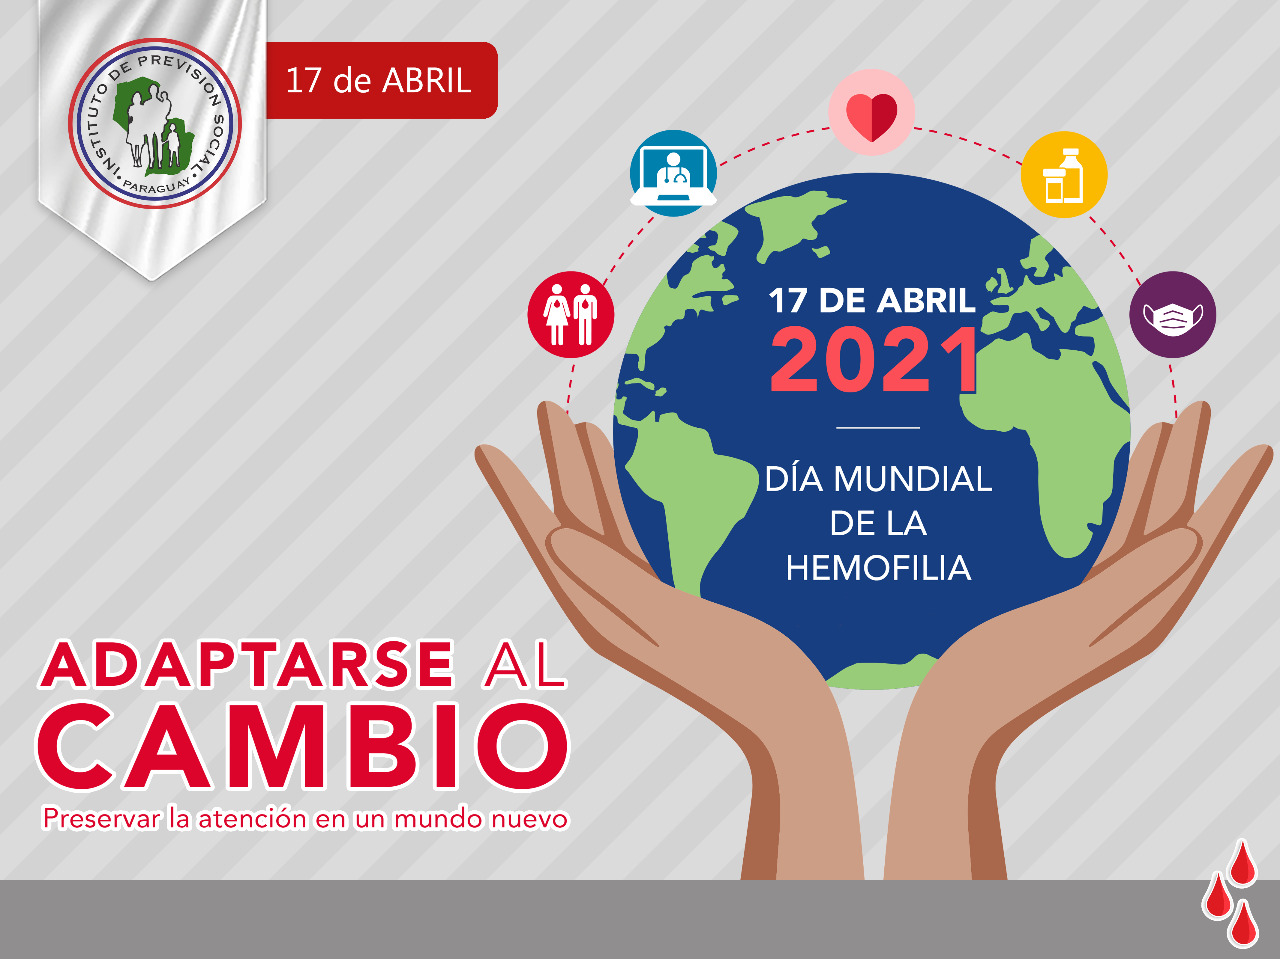 Día mundial de la hemofilia nos invita a “Adaptarse al cambio”